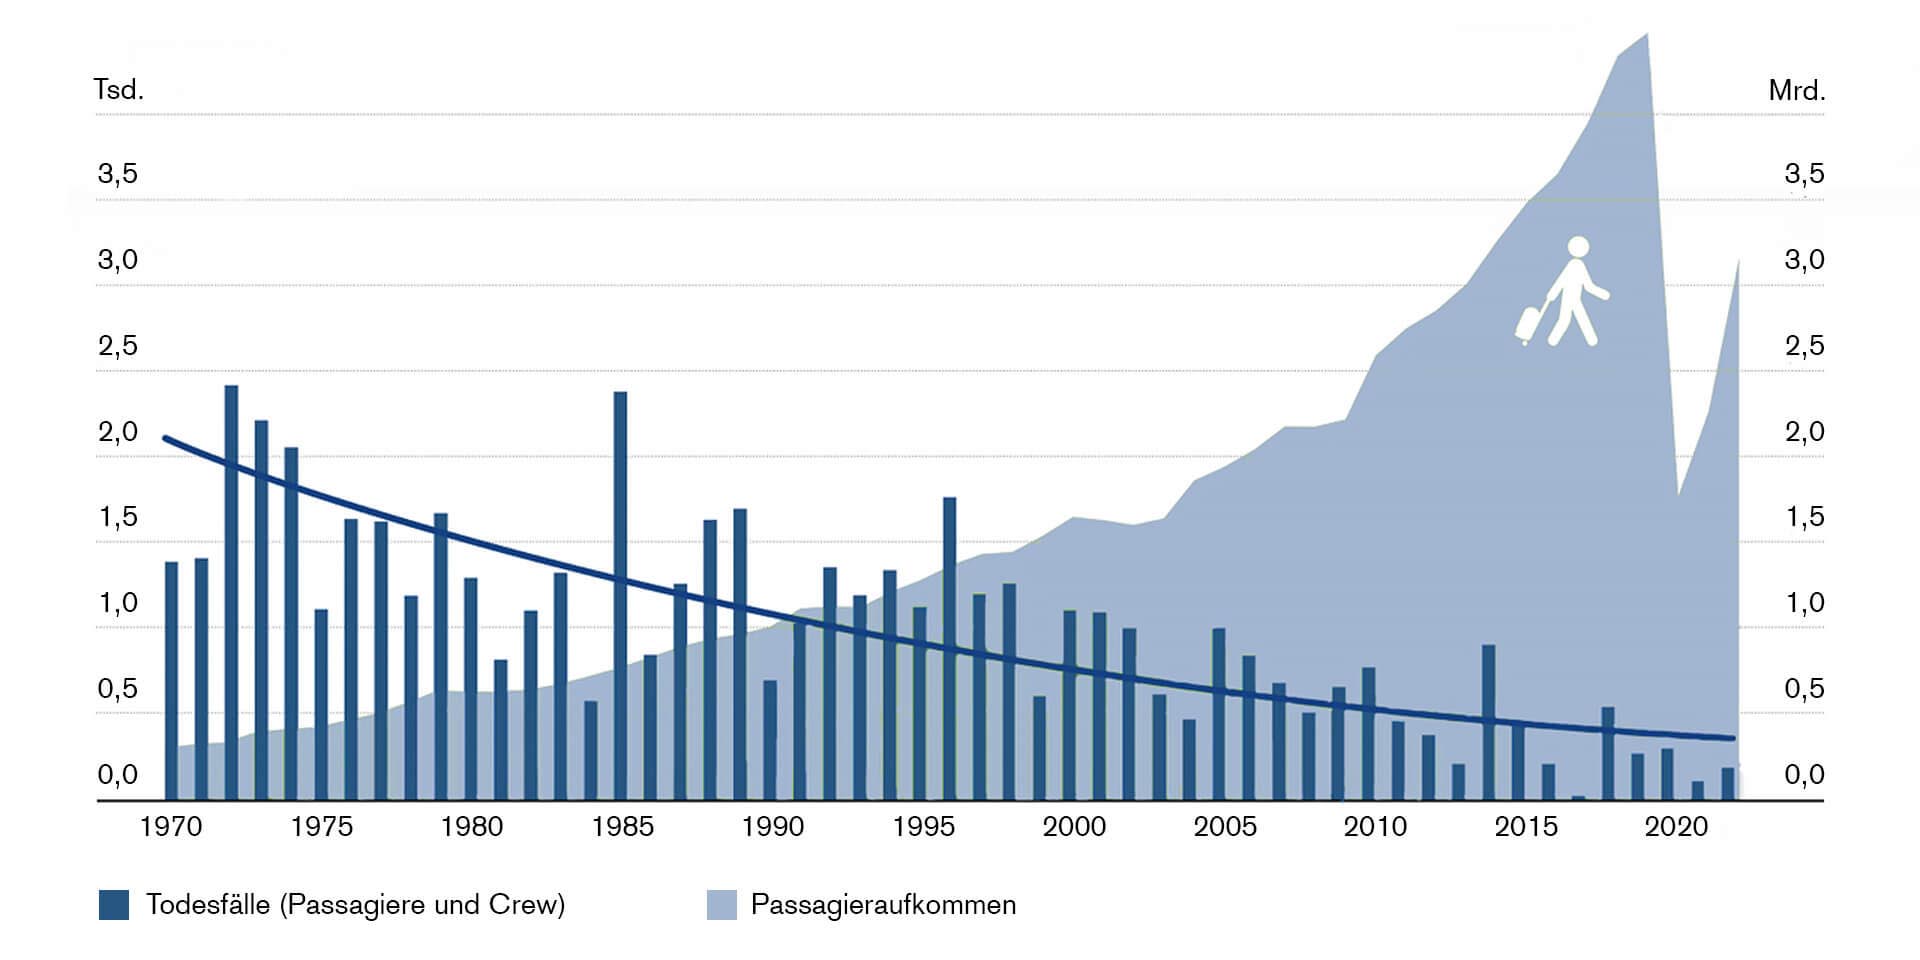 Wie Abbildung 2 zeigt, sind im Vergleich zu 1970 die Anzahl Fluggäste im Jahr 2022 immer noch rund acht Mal höher. Die Wahrscheinlichkeit, bei einen Flugzeugabsturz ums Leben zu kommen, lag in den 1970er-Jahren im Durchschnitt bei rund 1:264'000. Im vergangenen Jahr lag diese Zahl bei 1:15'609’756. Mit anderen Worten, aus statistischer Sicht war im Jahr 2022 das Fliegen in etwa 59 Mal sicherer geworden als in den 1970ern.